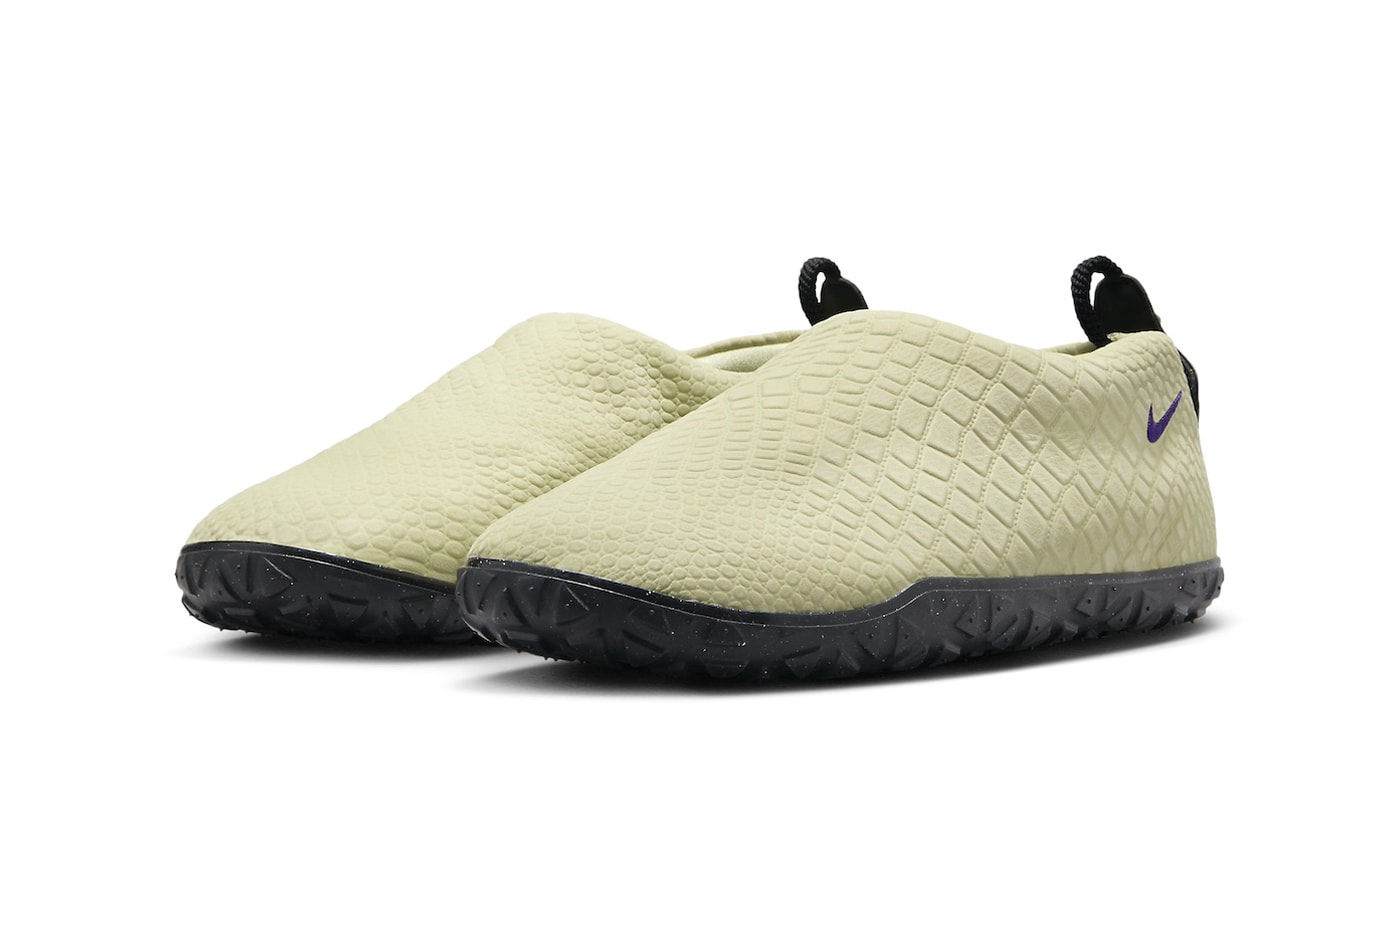 ナイキACGエアモックから春らしい柔らかな配色を纏った“オリーブオーラ”が登場 Nike ACG Moc Premium Olive Aura FV4571-300 Release Info